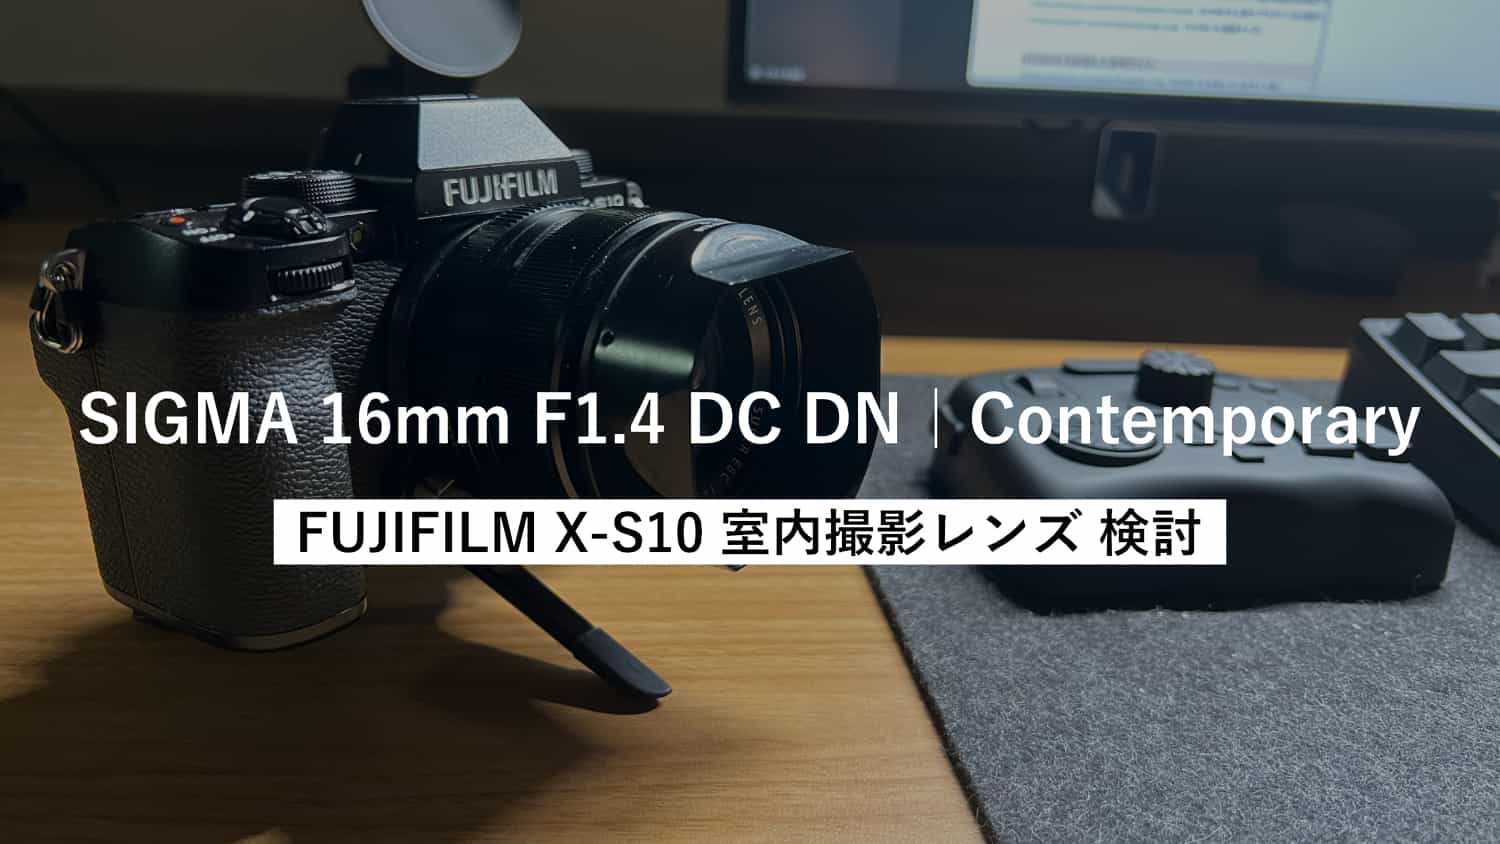 FUJIFILM X-S10 で室内撮影するなら SIGMA 16mm F1.4 DC DNを使うと幸せになれそうなお話